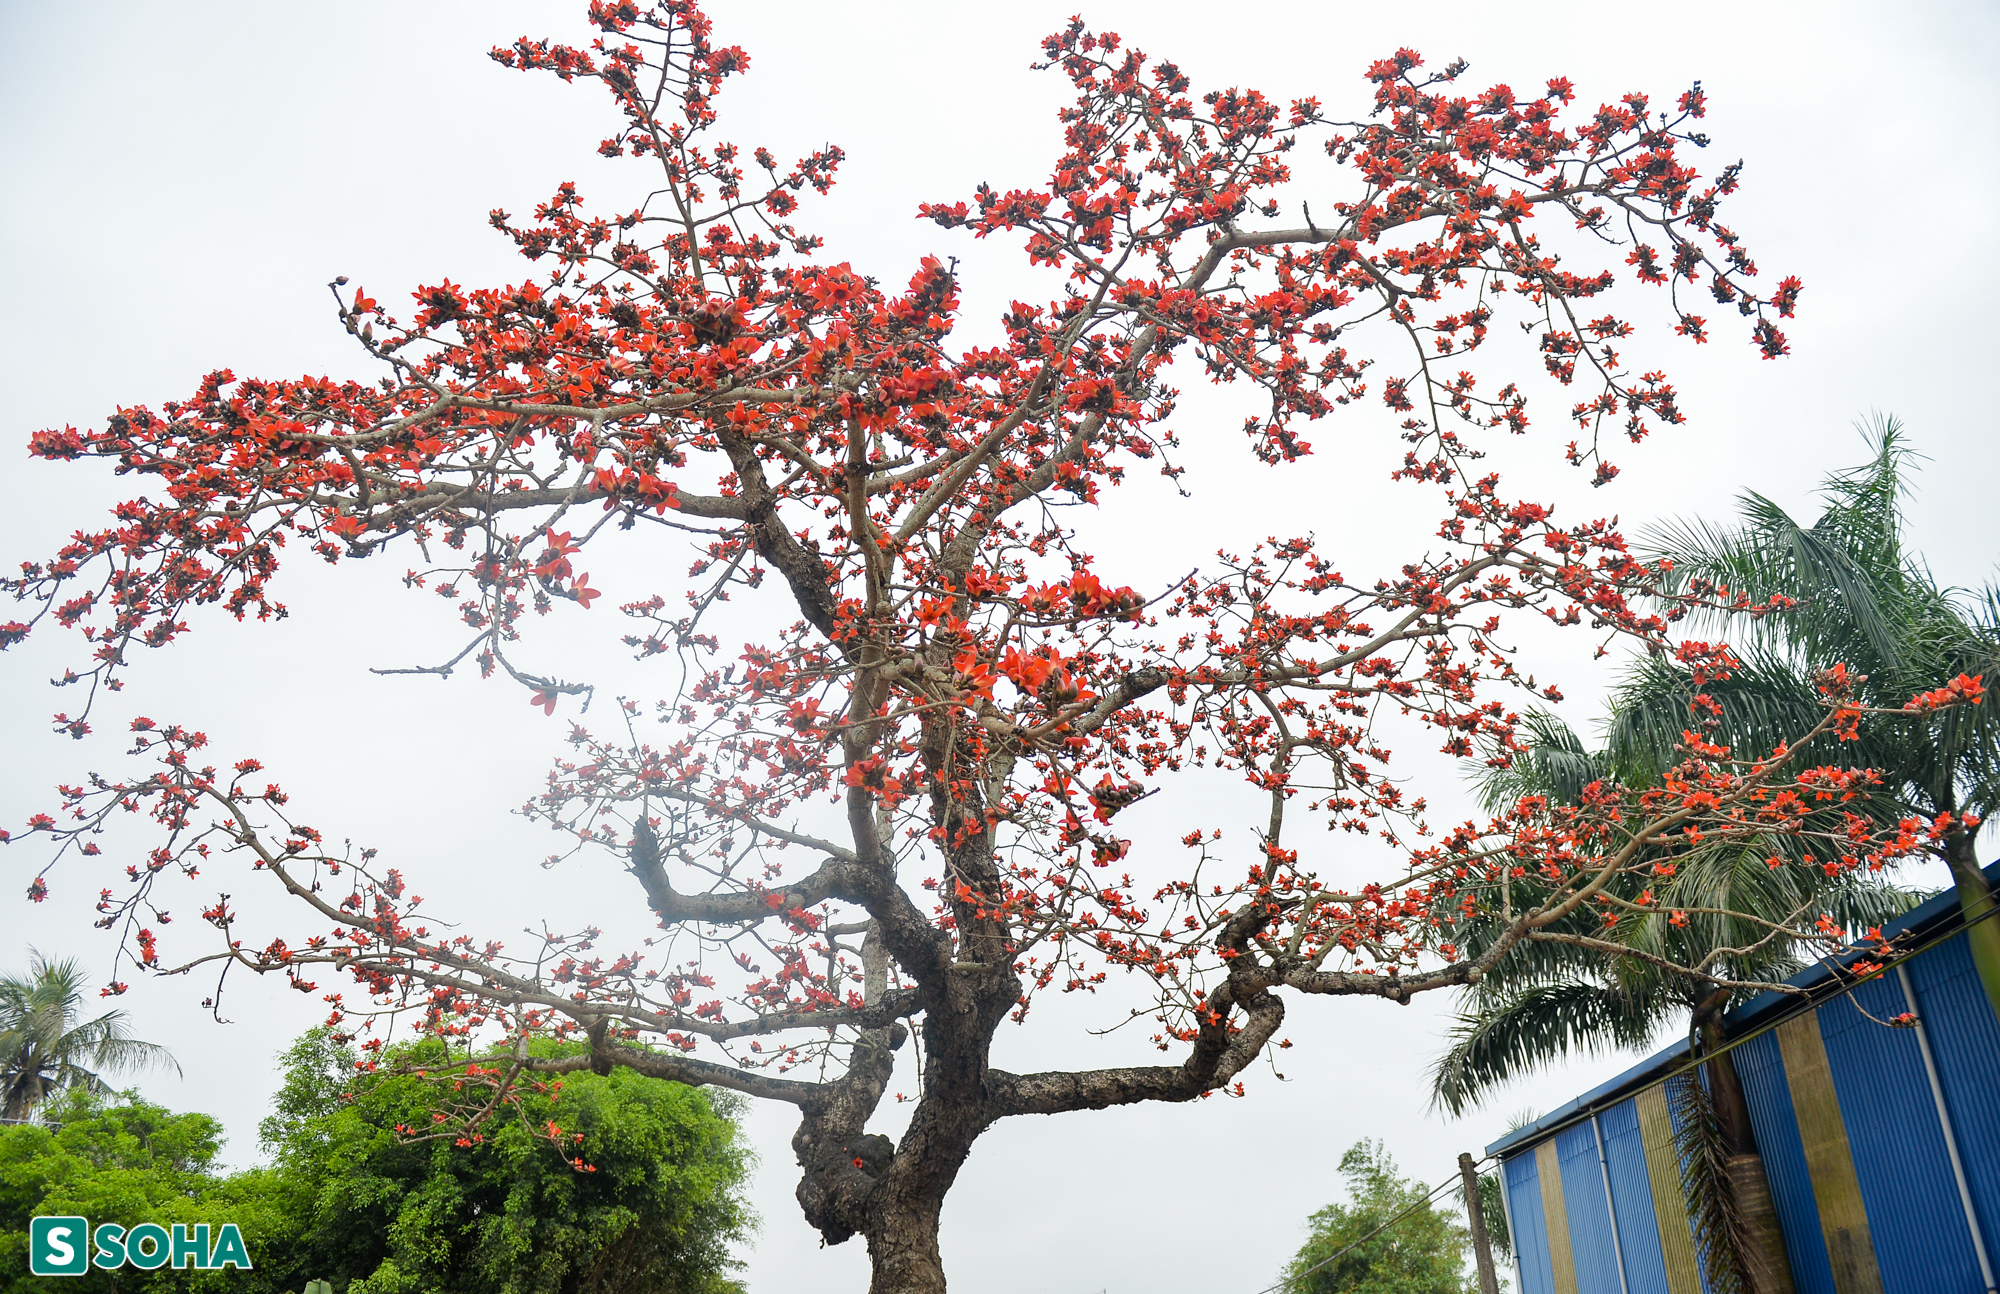 Mãn nhãn chiêm ngưỡng cây gạo gù, thân dáng rồng nở hoa đỏ rực ở Thái Bình - Ảnh 10.